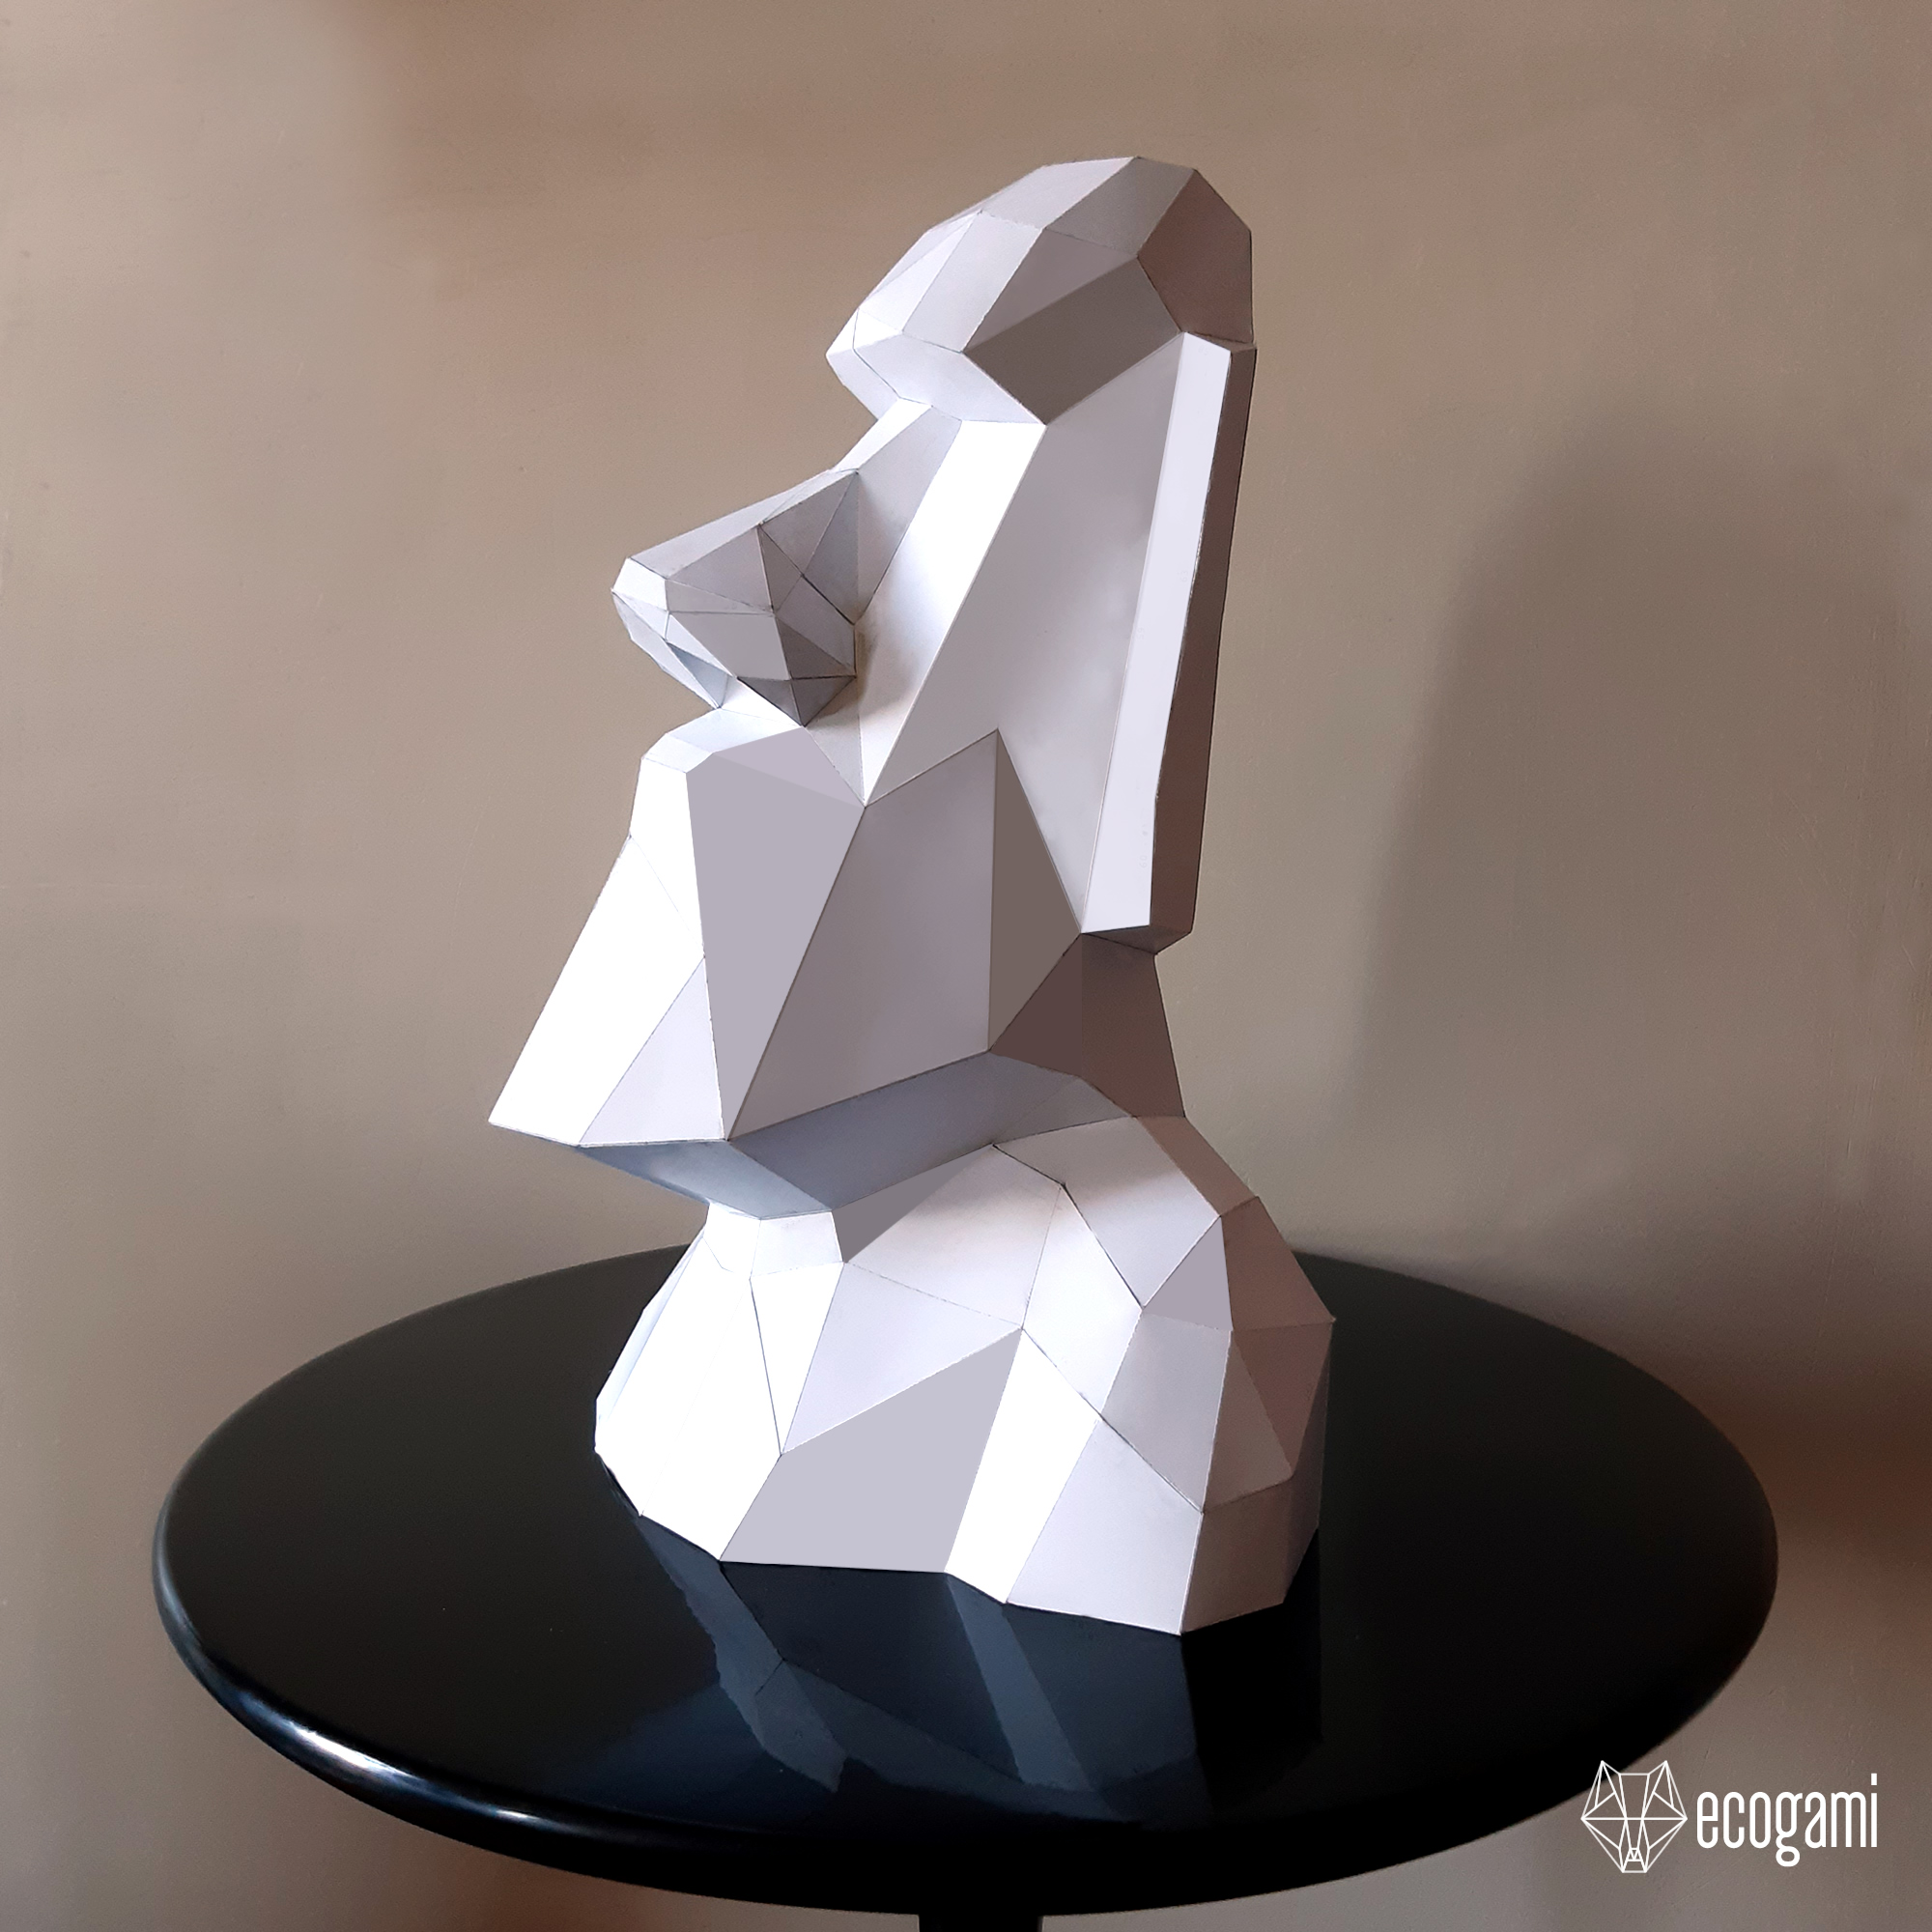 Projet diy papercraft: statue de moai : sculpture par ecogamishop